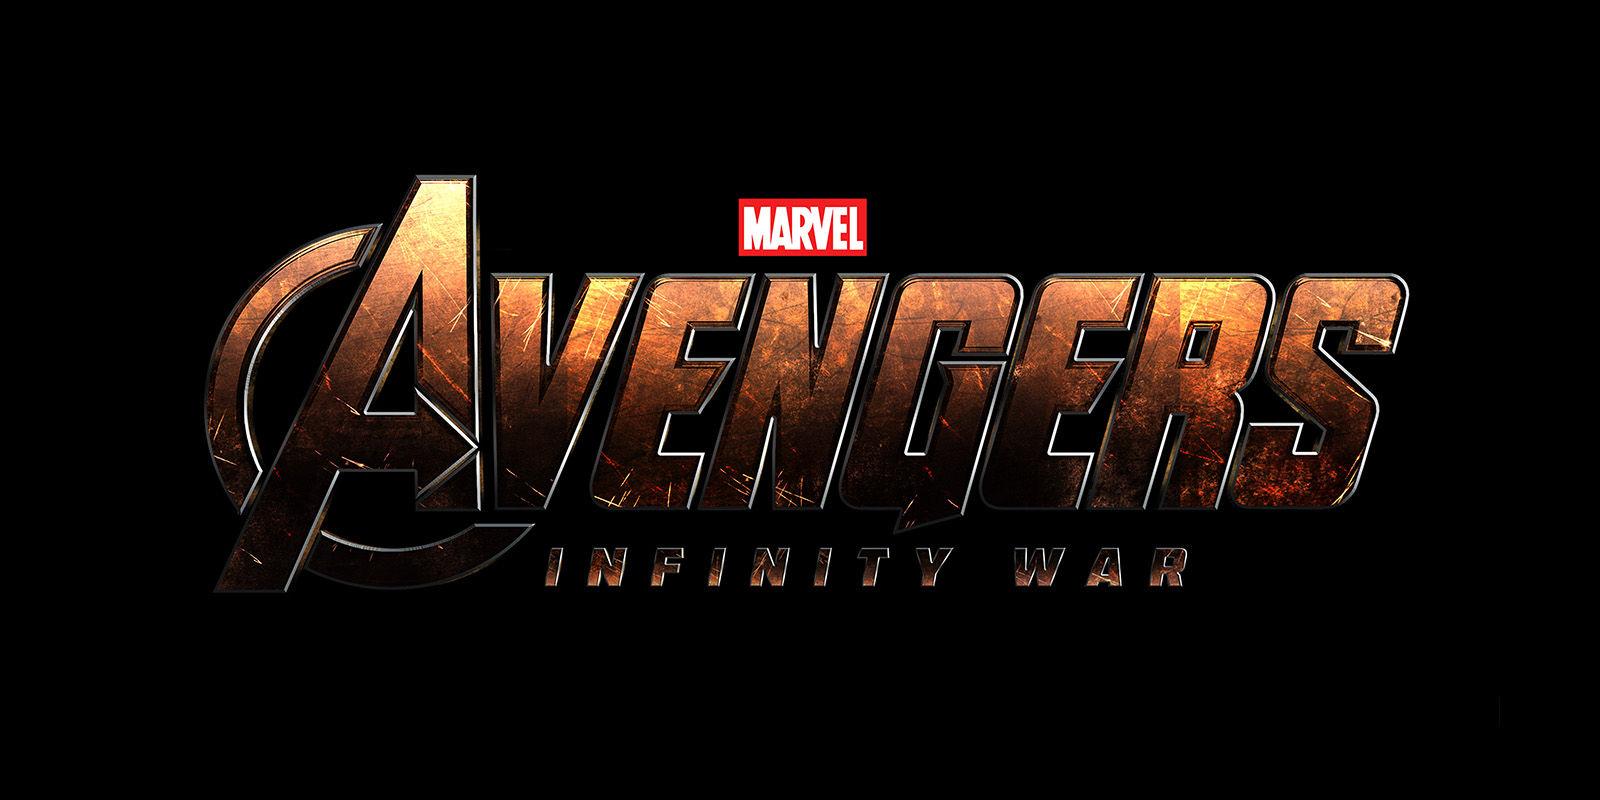 Comenzaron las grabaciones de Avengers: Infinity War